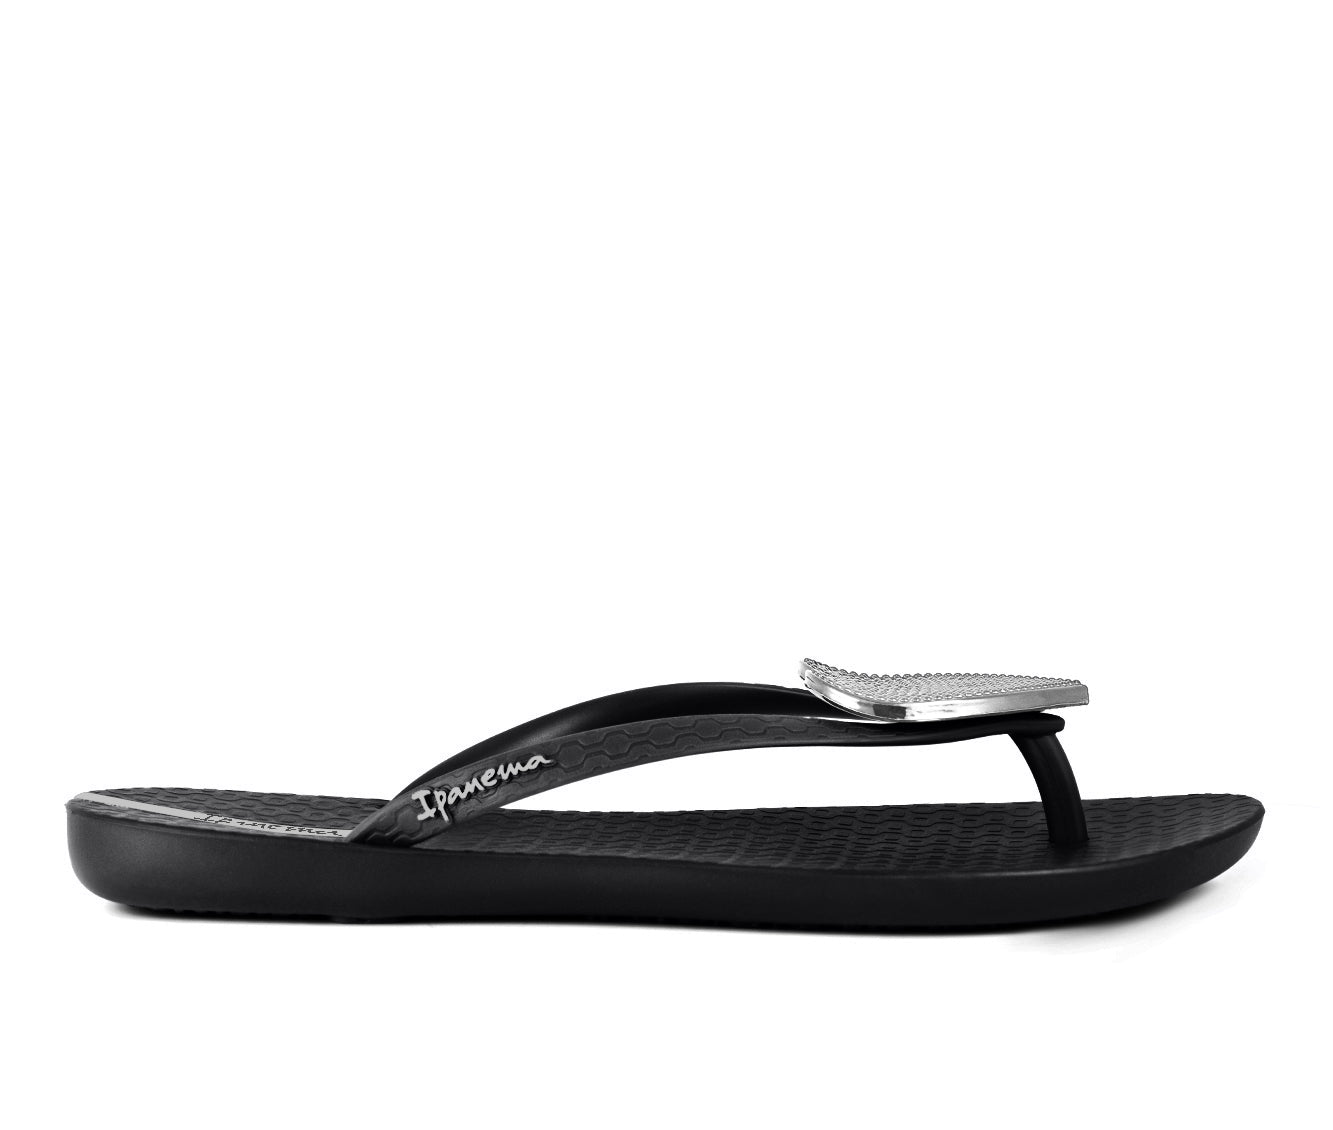 Ipanema | Shoes | Ipanema Sandals Size 8 | Poshmark